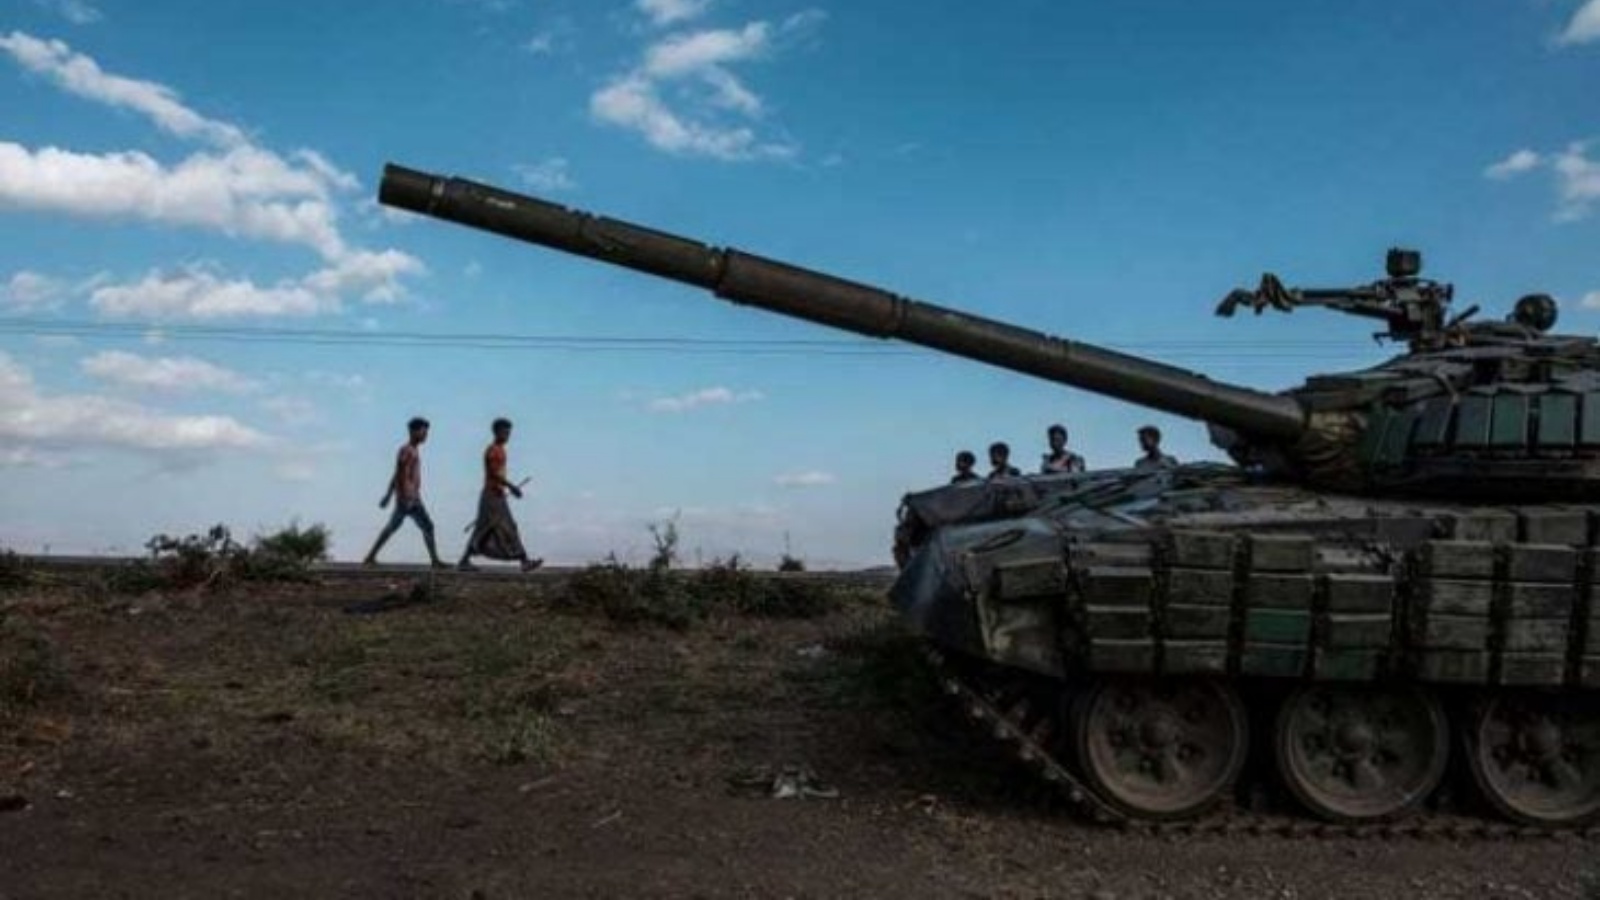 شخصان يعبران أمام دبابة لمتمردي تيغراي في جنوب ميهوني بجنوب الإقليم الواقع في شمال إثيوبيا 